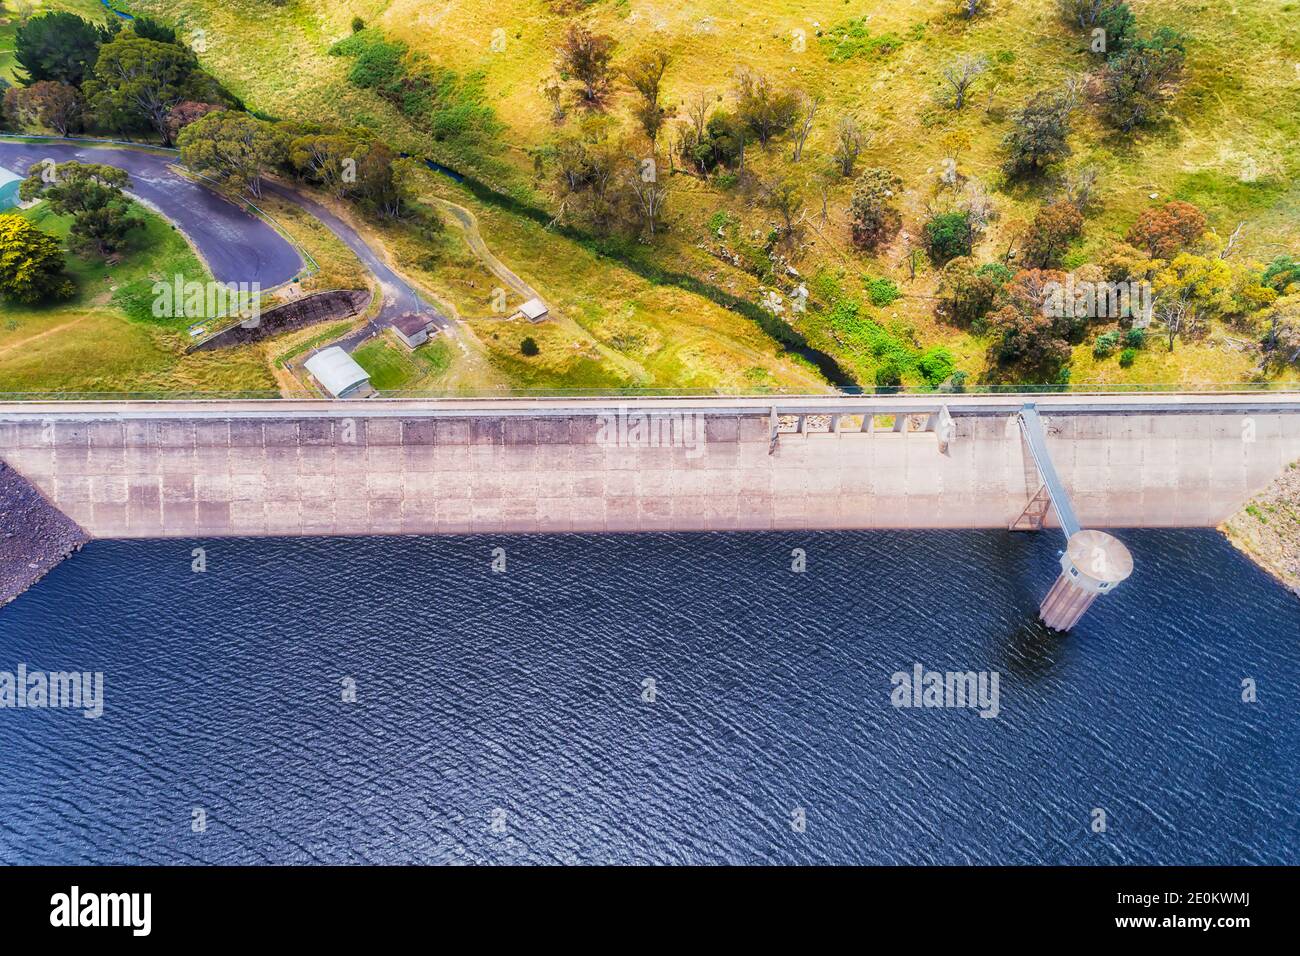 Denken Sie an einen Betondamm am Oberon Lake, der den Fischfluss überquert - von oben aus gesehen. Stockfoto